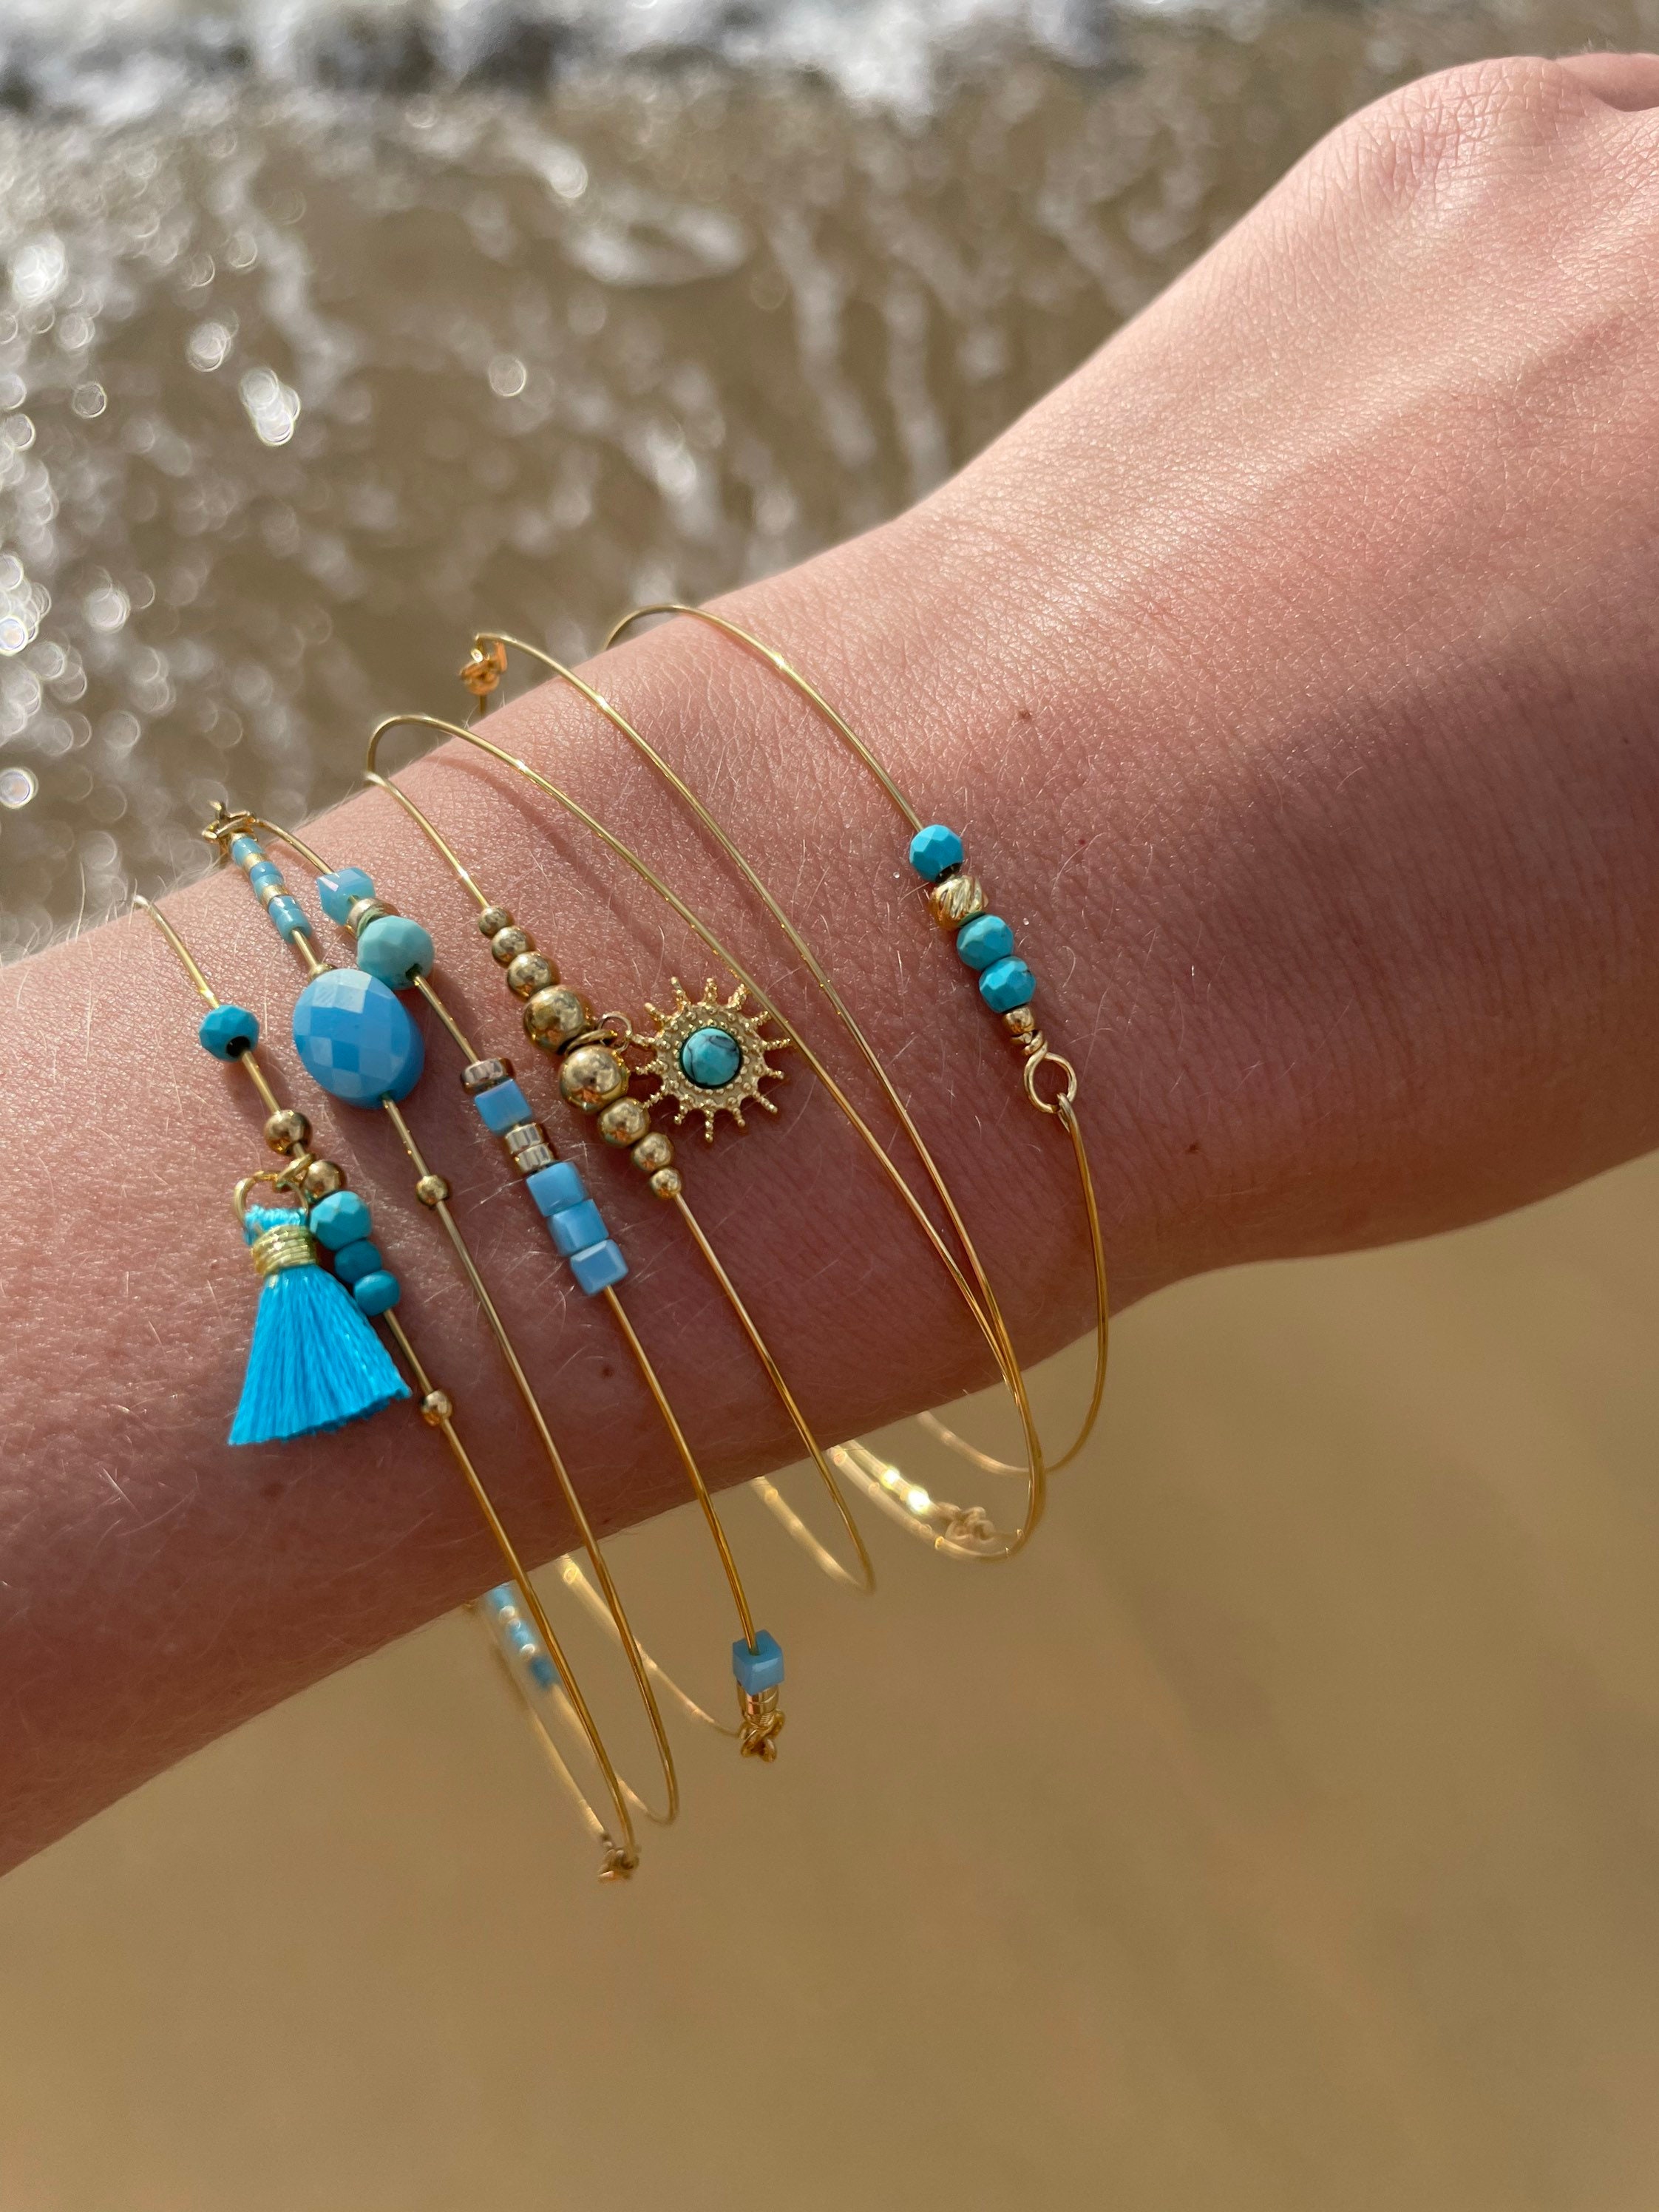 Ensemble de 7 bracelets femme en métal doré-bijoux fantaisie Plérin